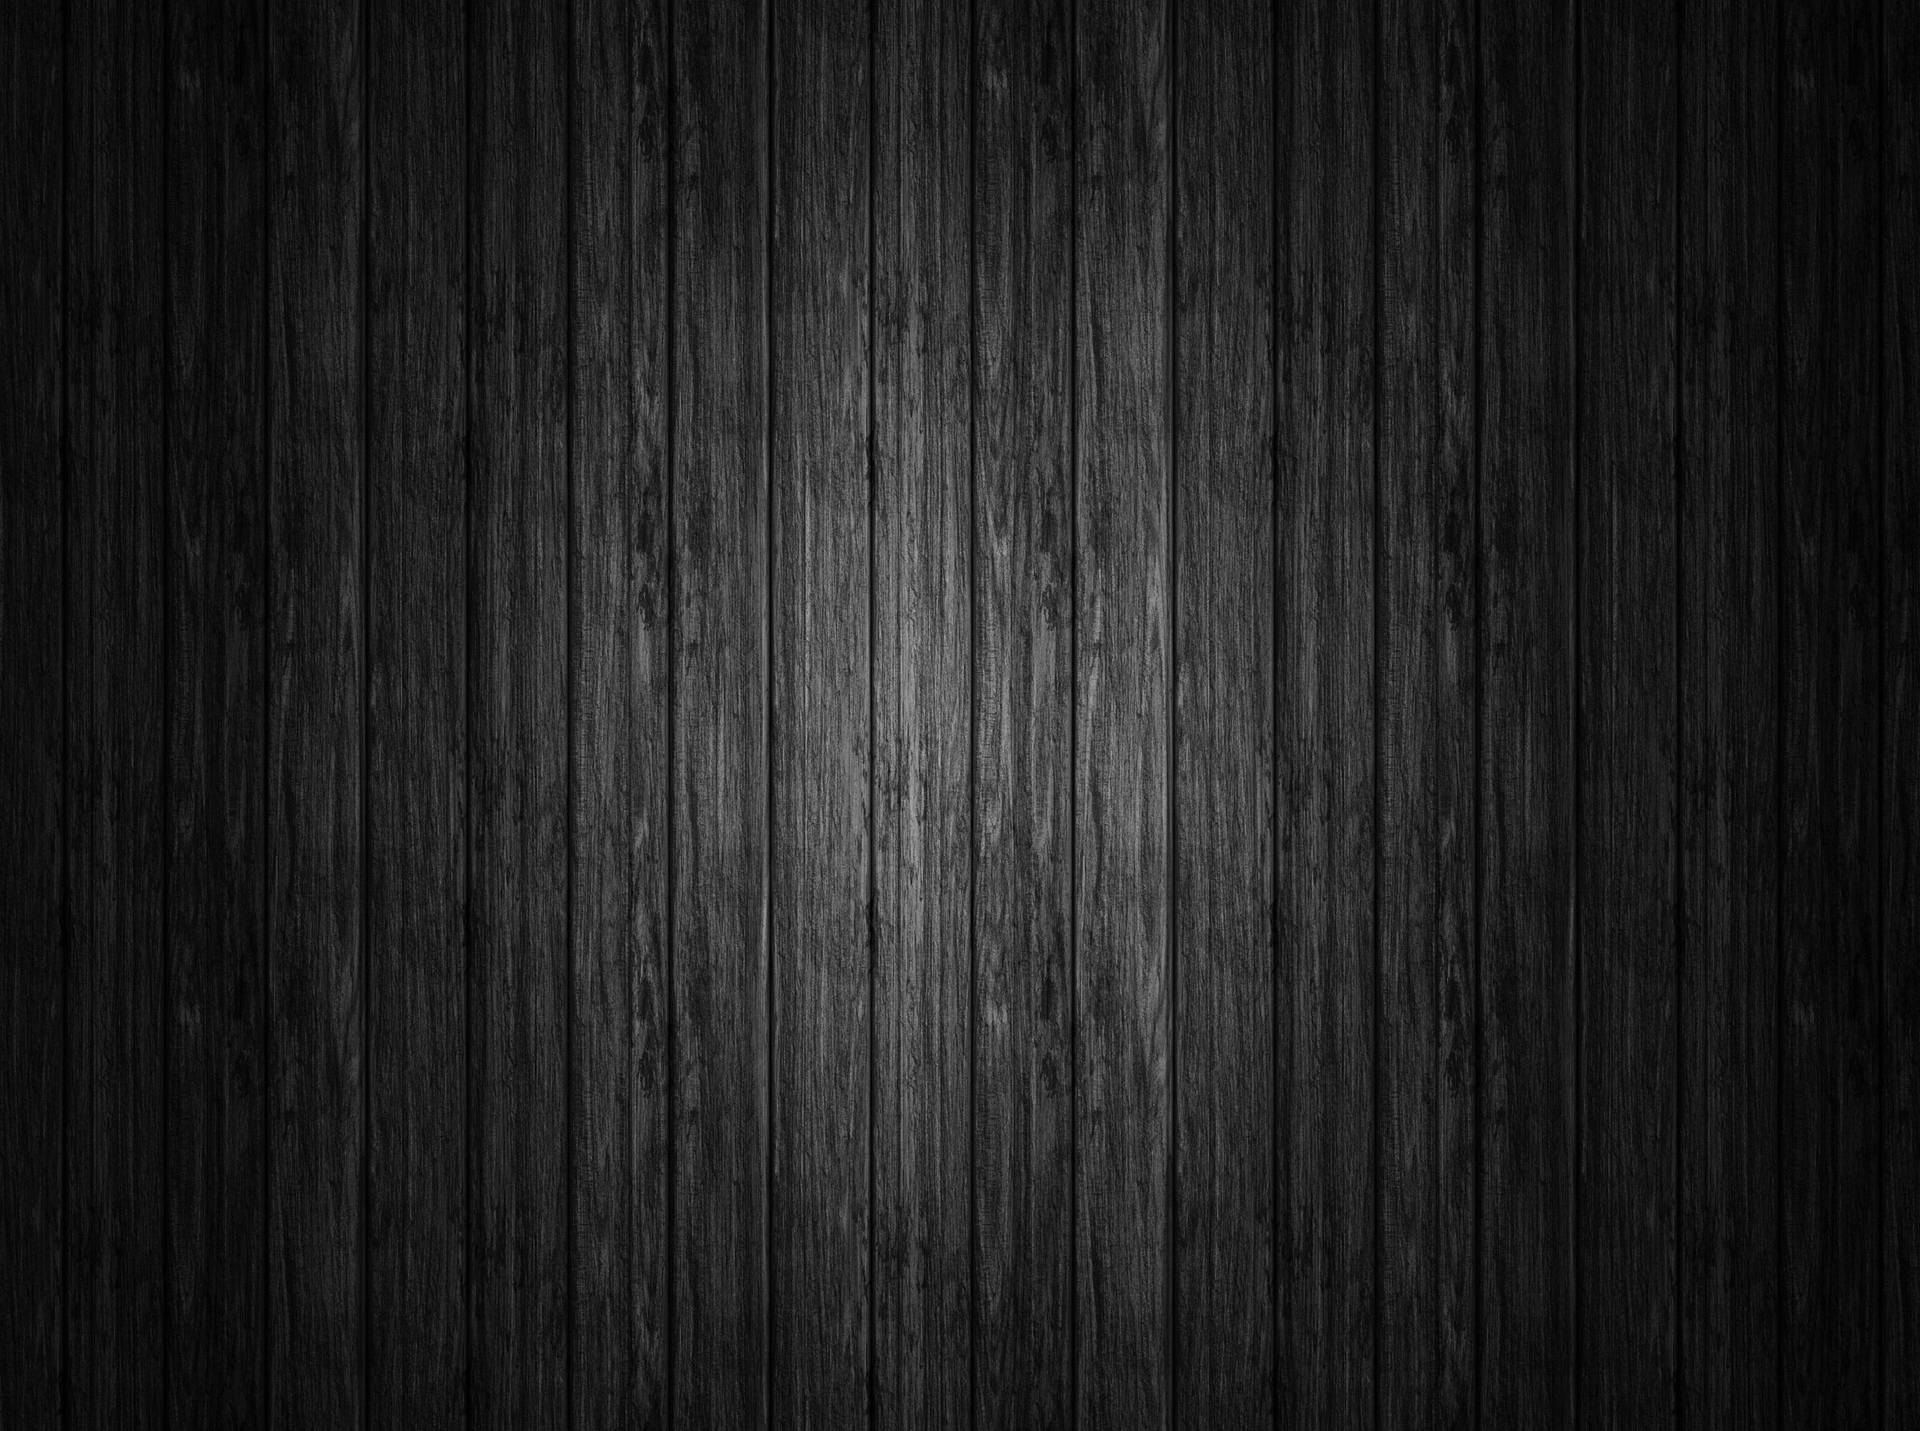 Solid Black 4k Black Wooden Panels